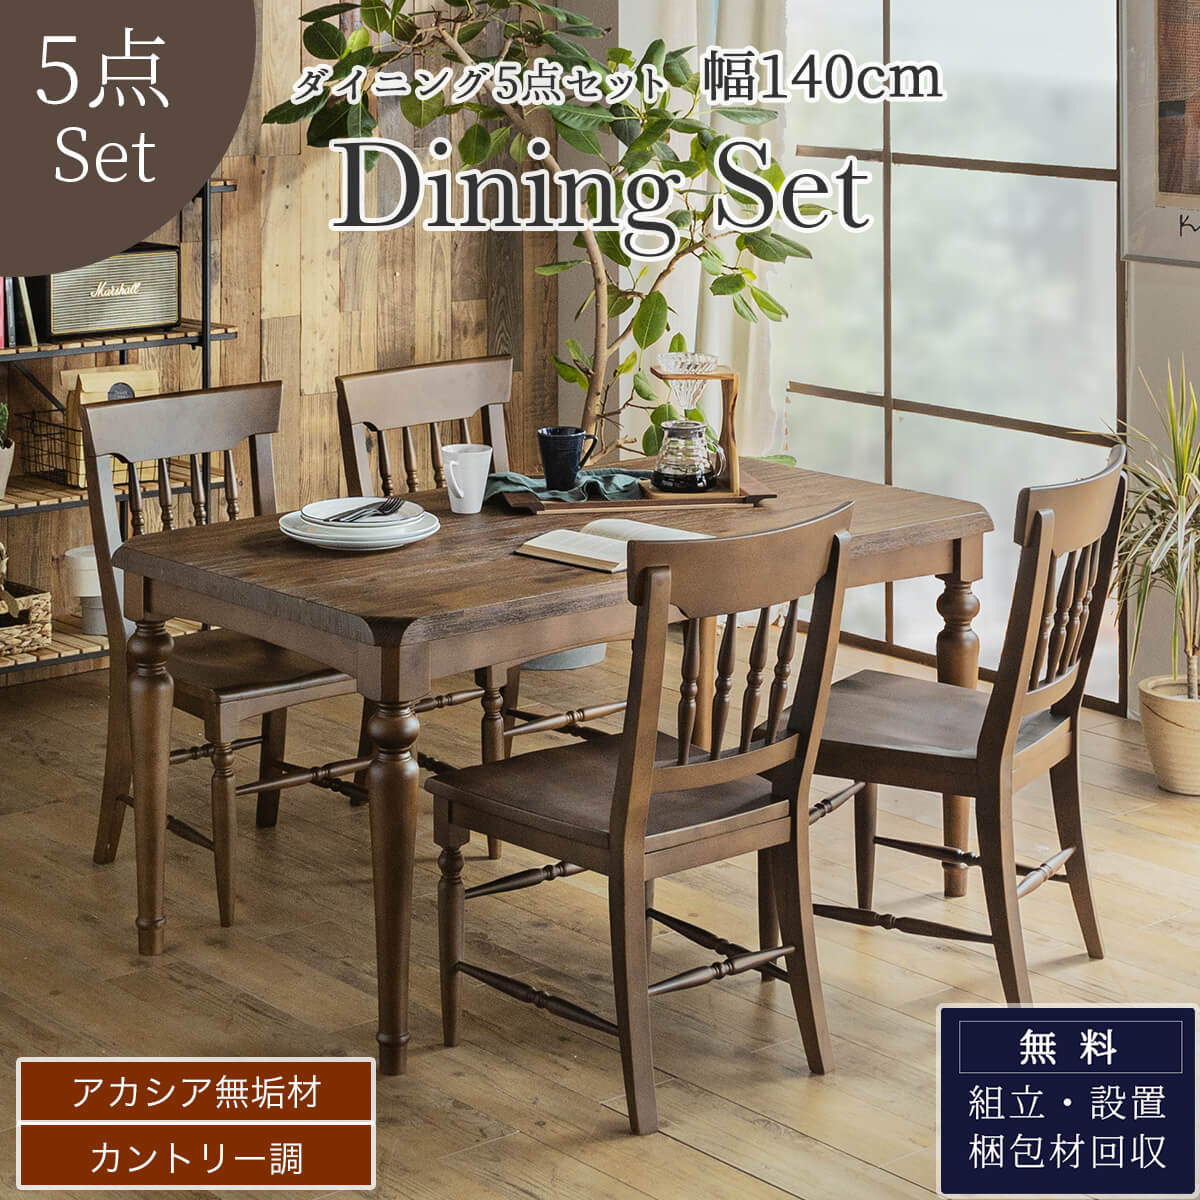 F01122_ ダイニングセット 食卓 木目 北欧 日本 おしゃれ おすすめ ダイニングテーブル ダイニングテーブル 天然木 5点セット シンプル  無垢 ナチュラルカントリー